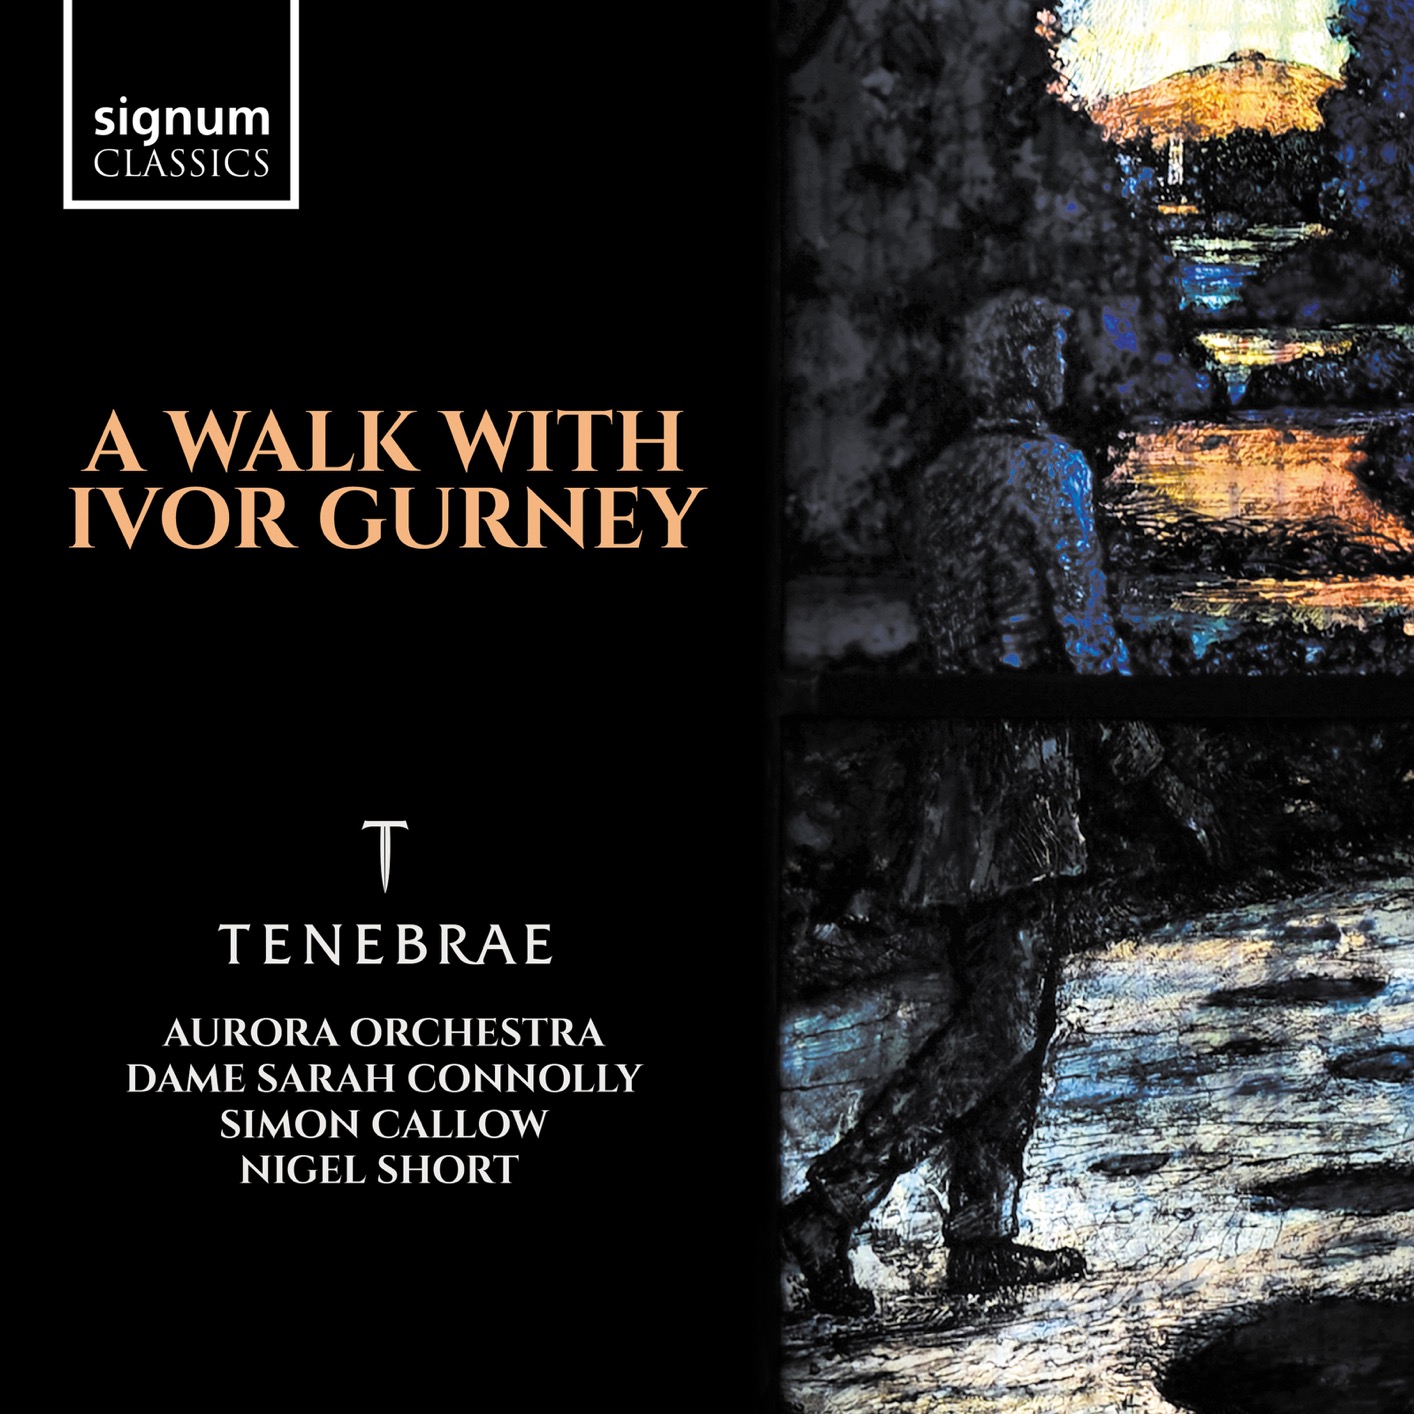 Tenebrae & Nigel Short – A Walk with Ivor Gurney (2018) [FLAC 24bit/96kHz]